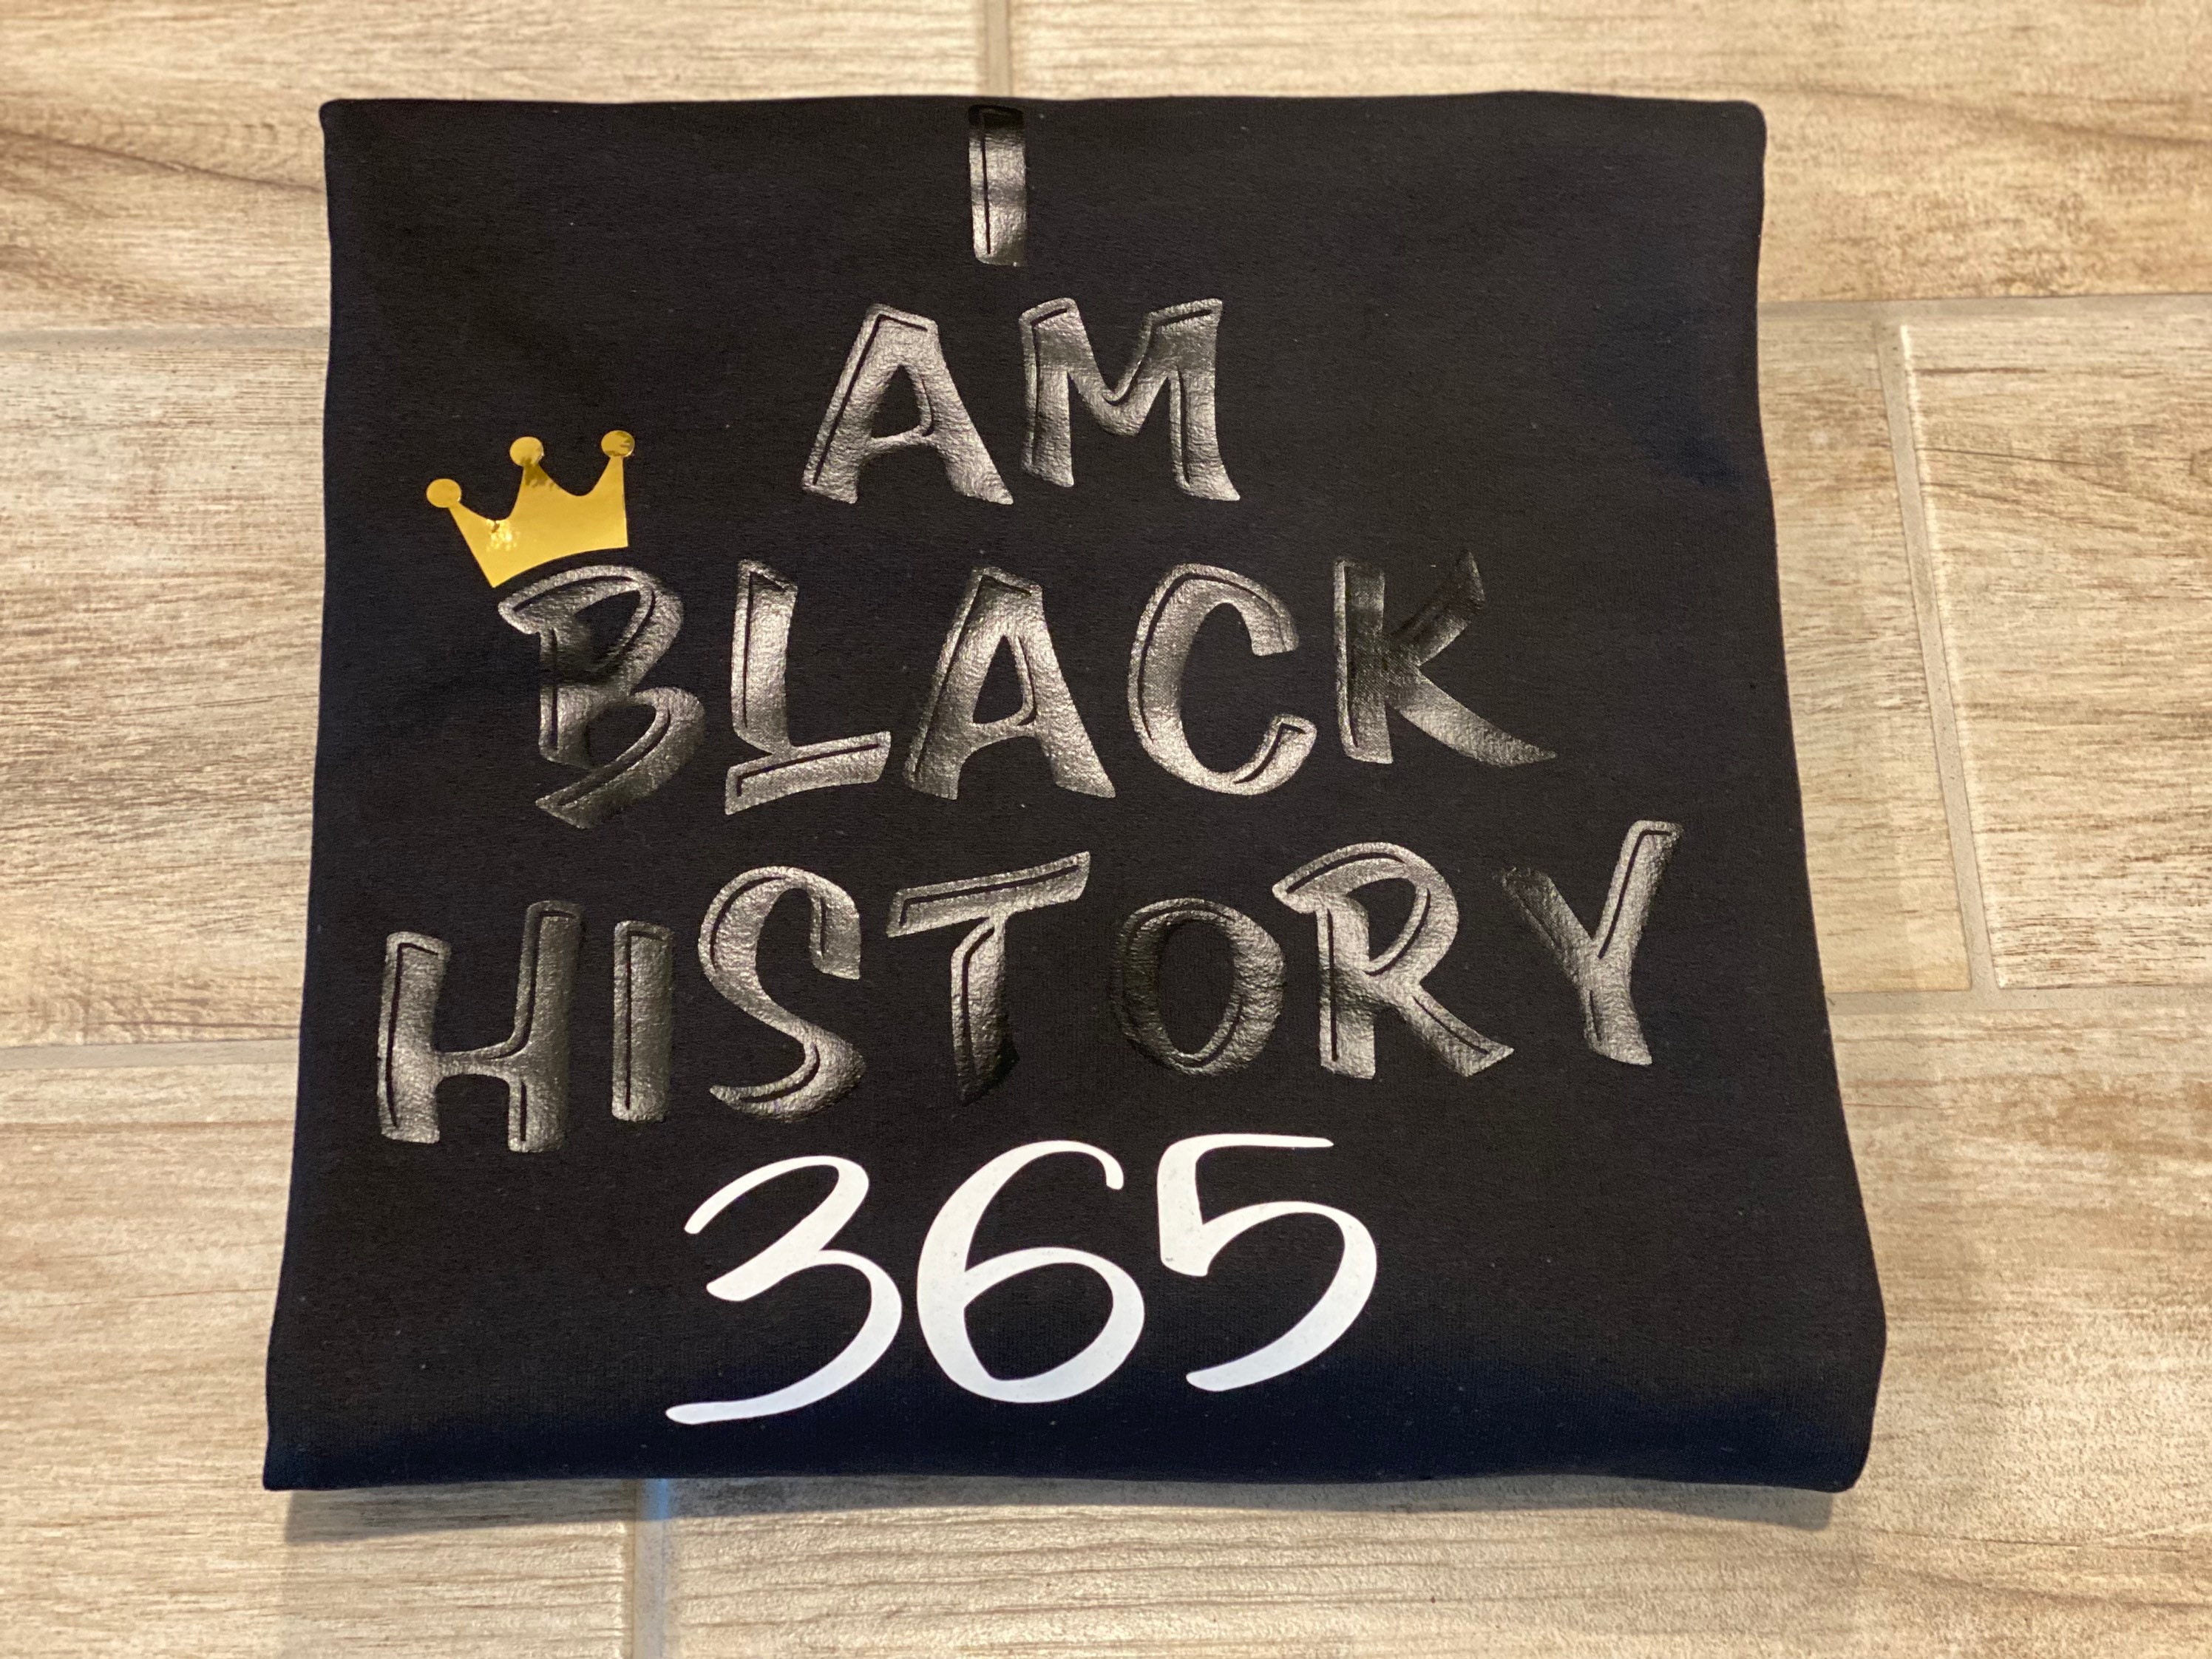 I Am Black History Everyday Tee